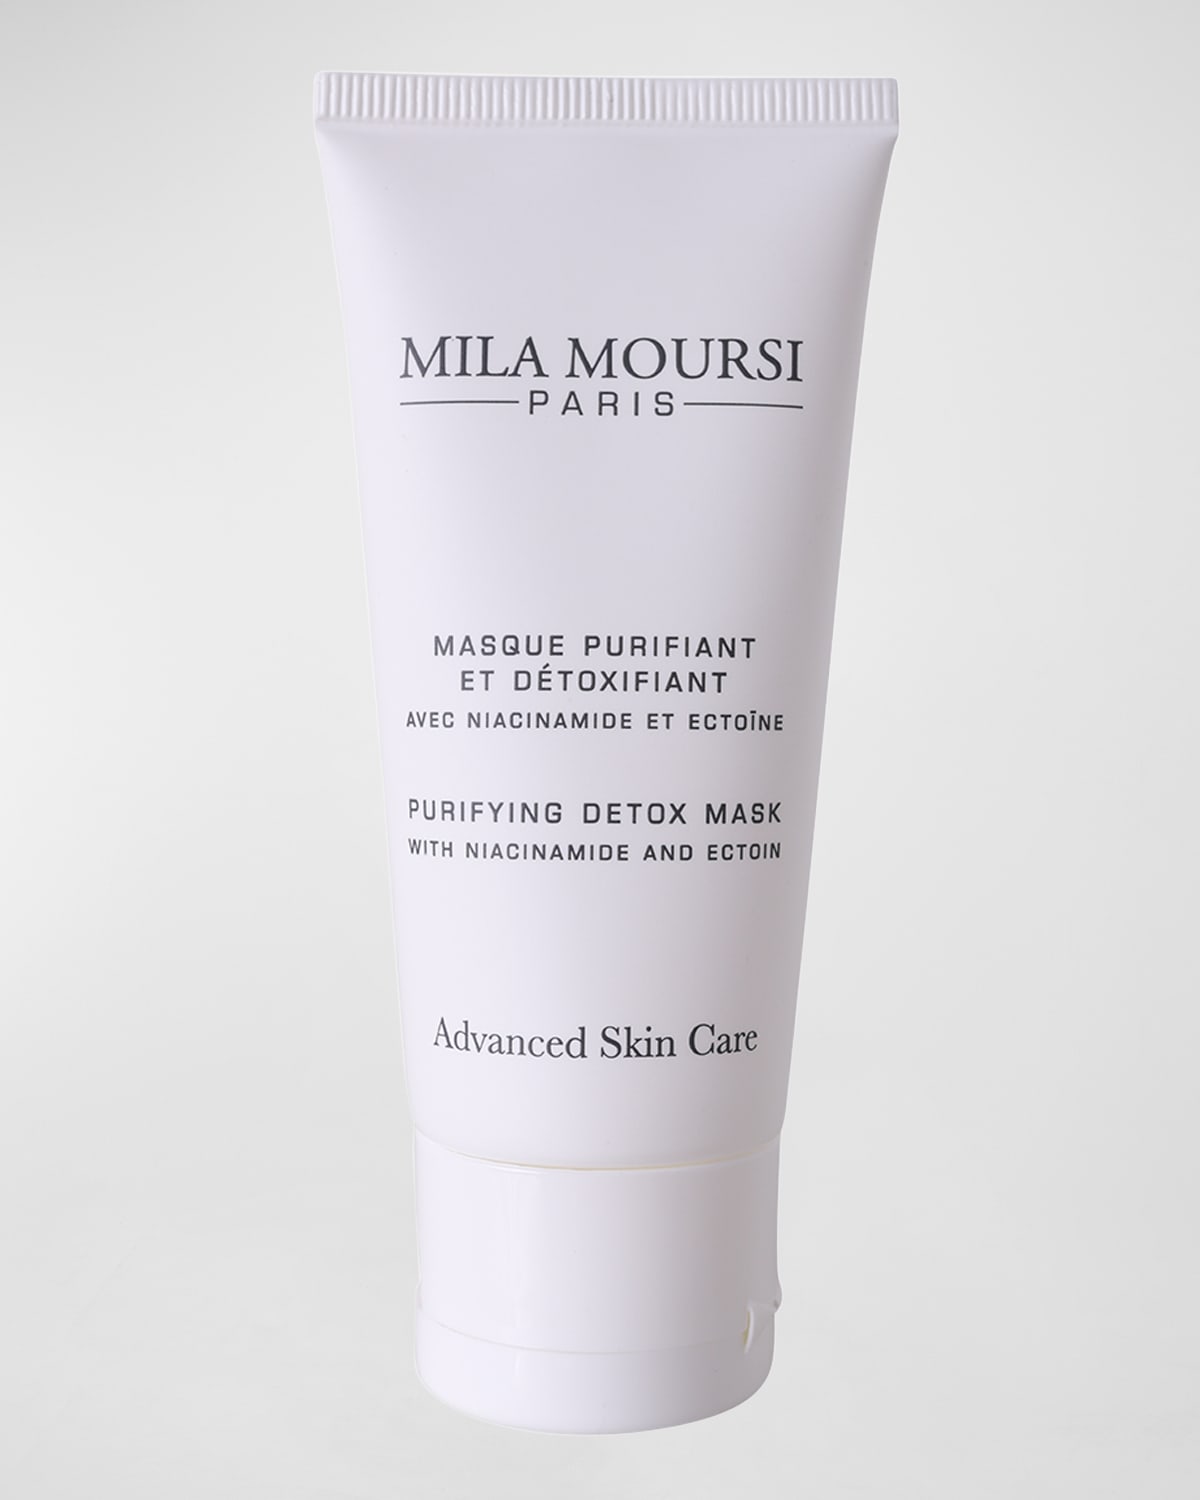 Mila Moursi Purifying Detox Mask, 1.7 oz.